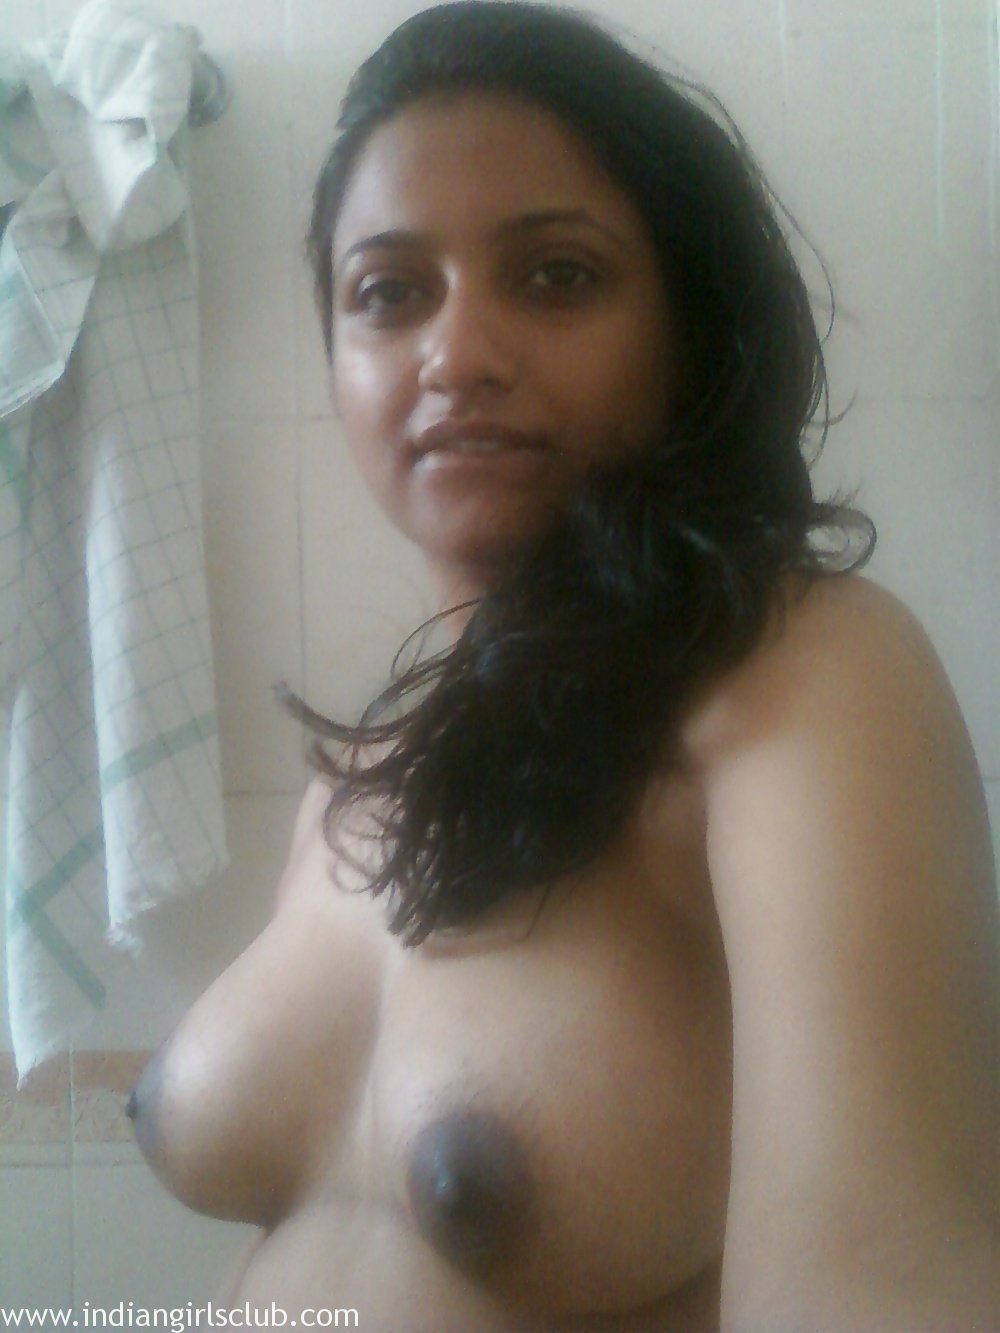 Usha Sex Video - Usha Indian Girl Nude Sex Photos - Indian Girls Club